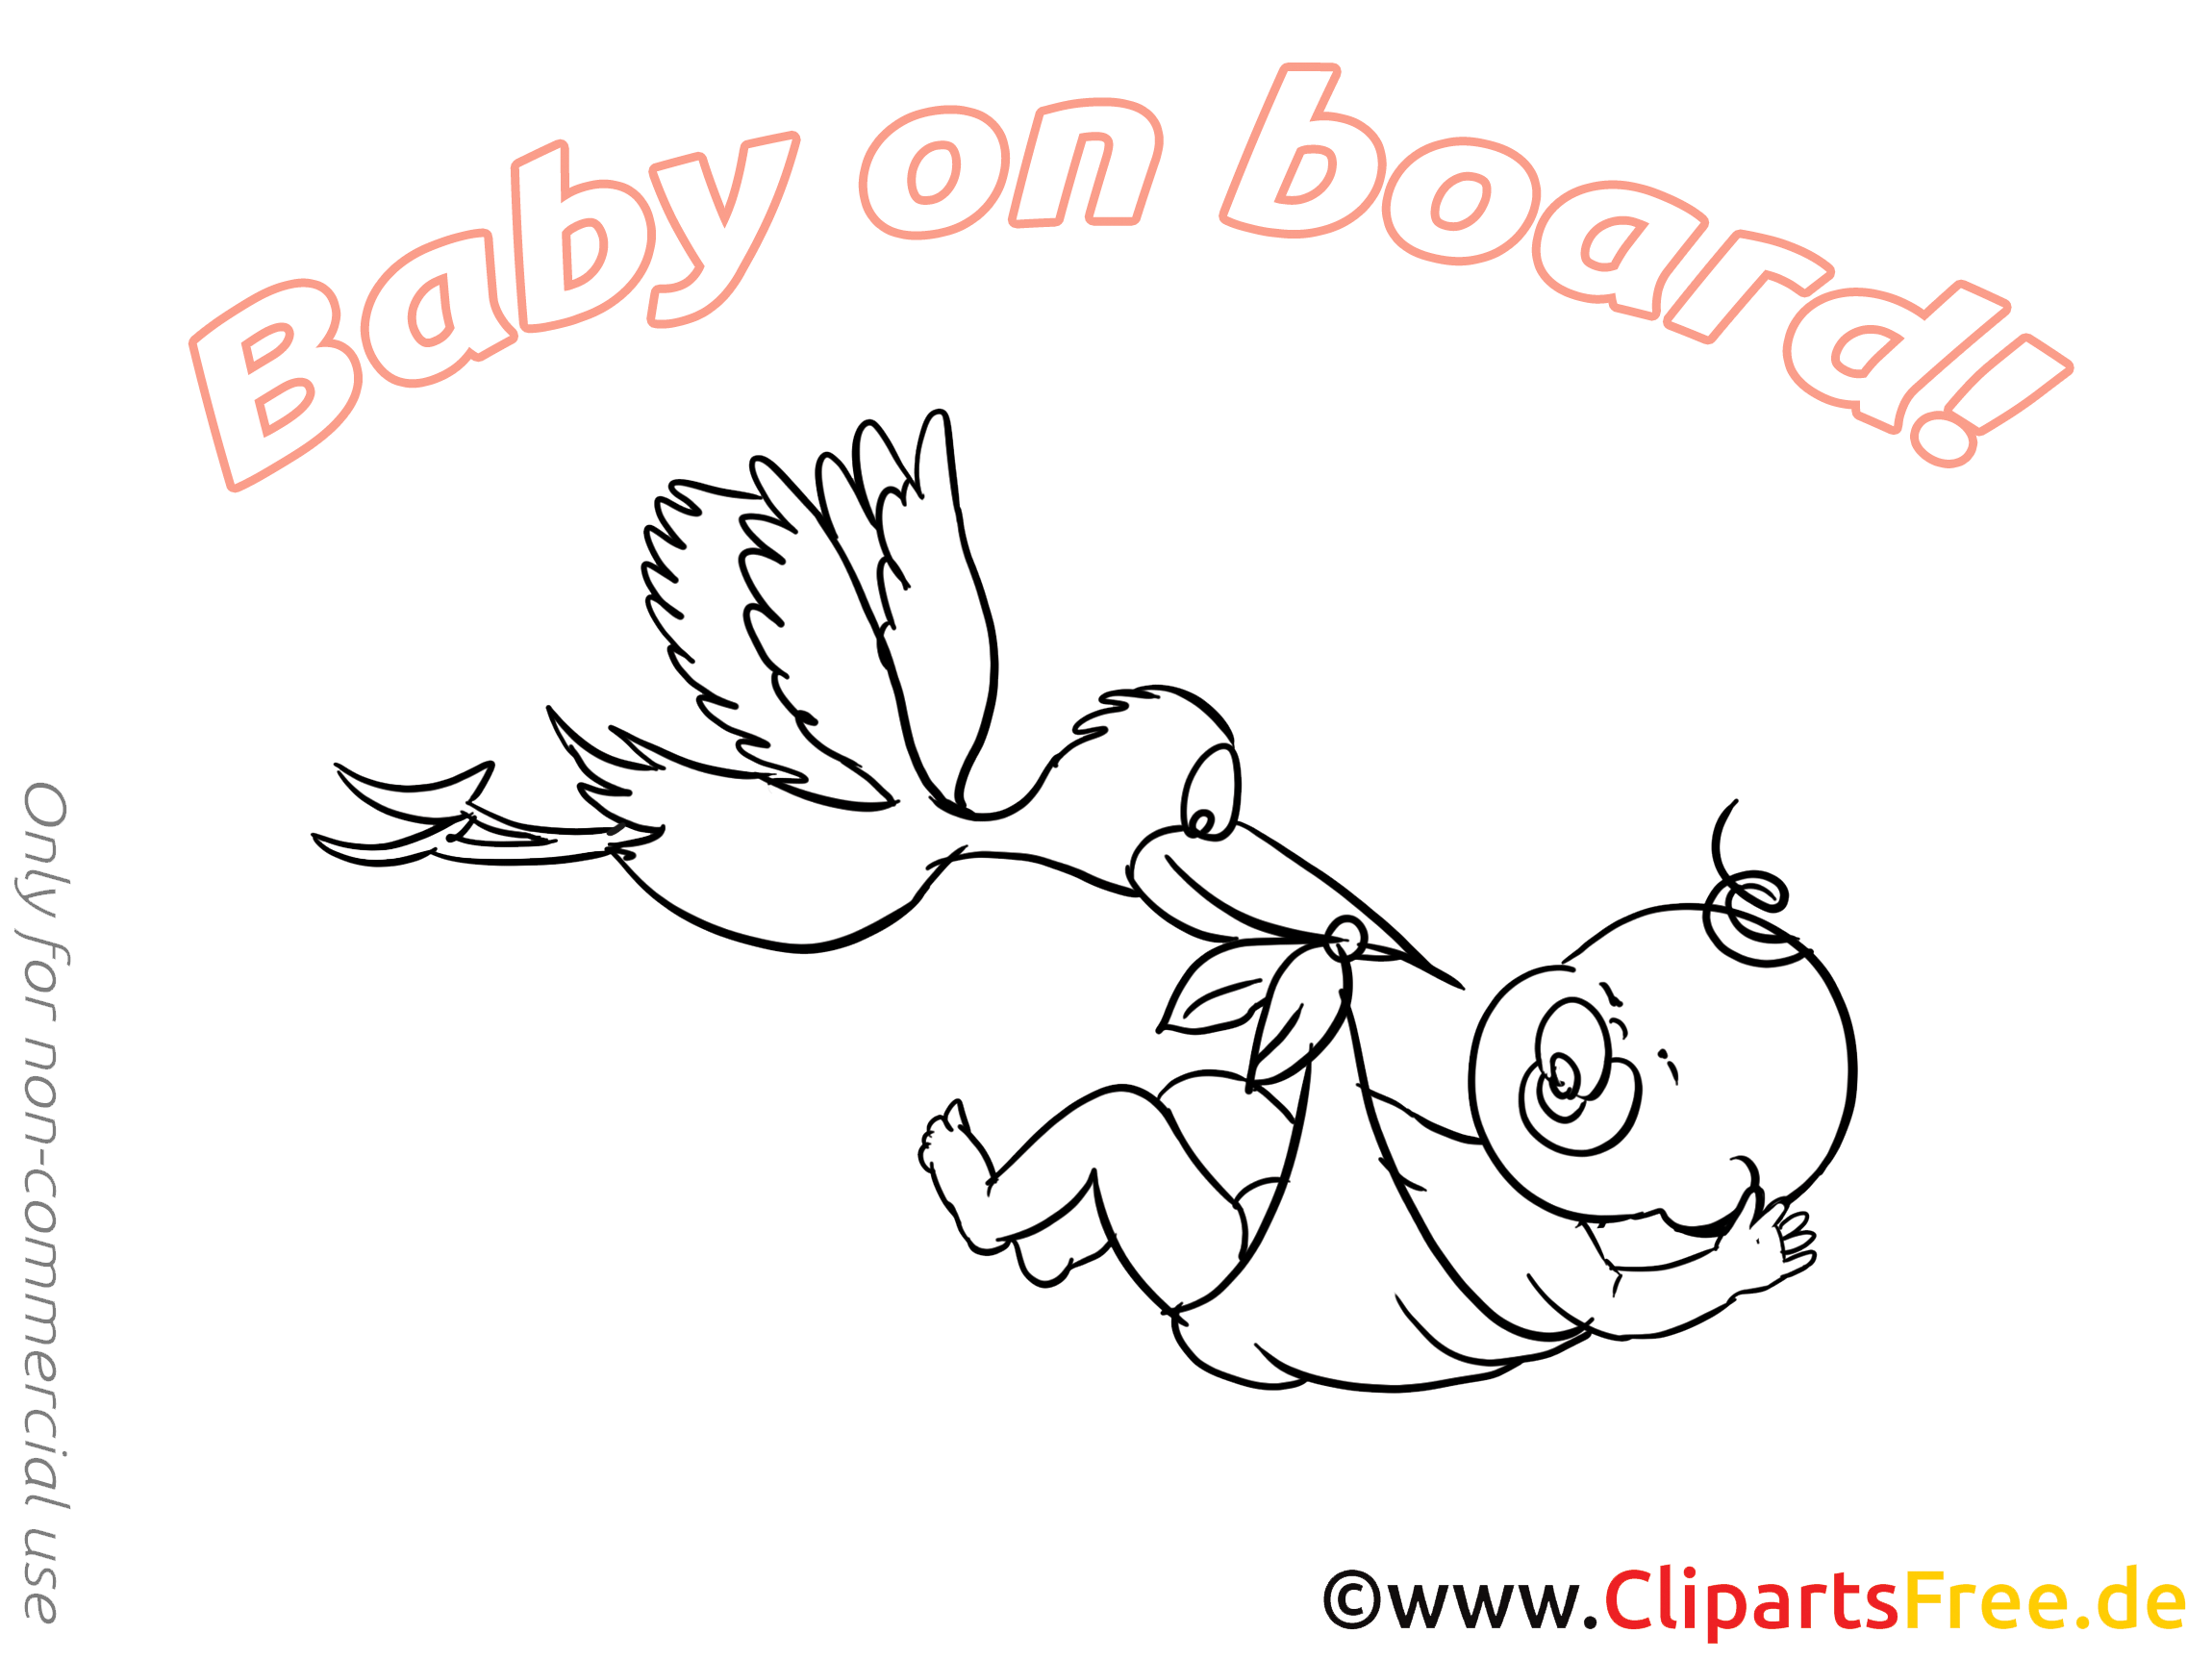 Cygogne dessin à colorier – Bébé à bord clip arts gratuits